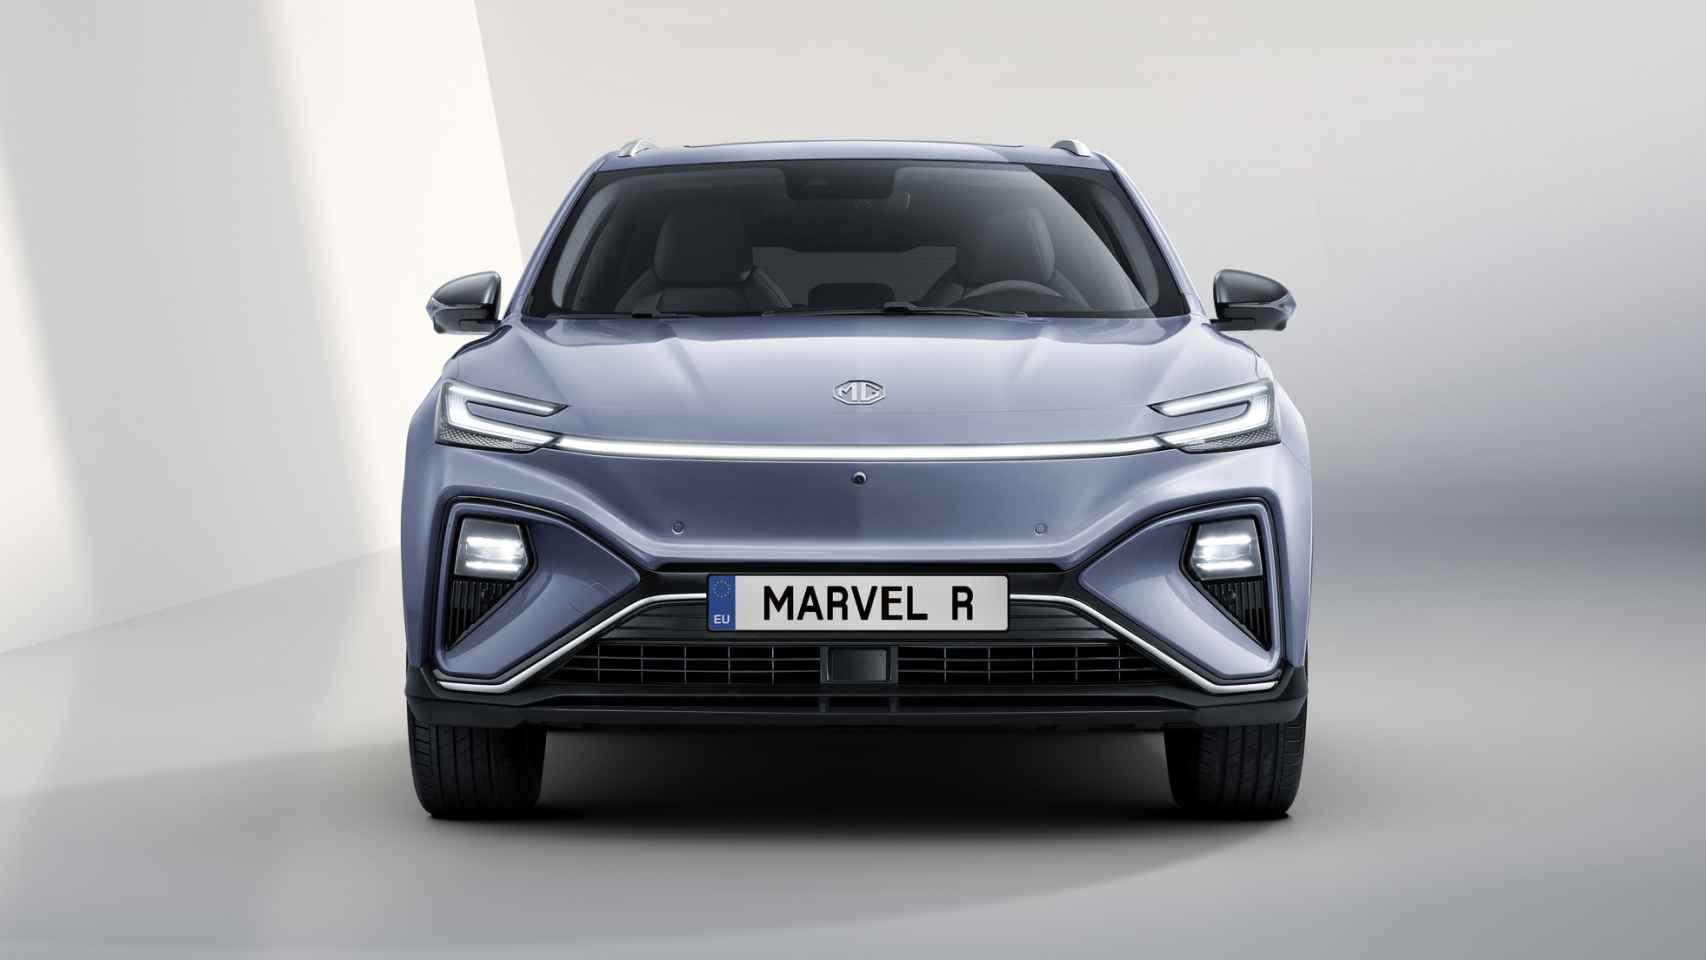 El MG Marvel R será el buque insignia de la marca.